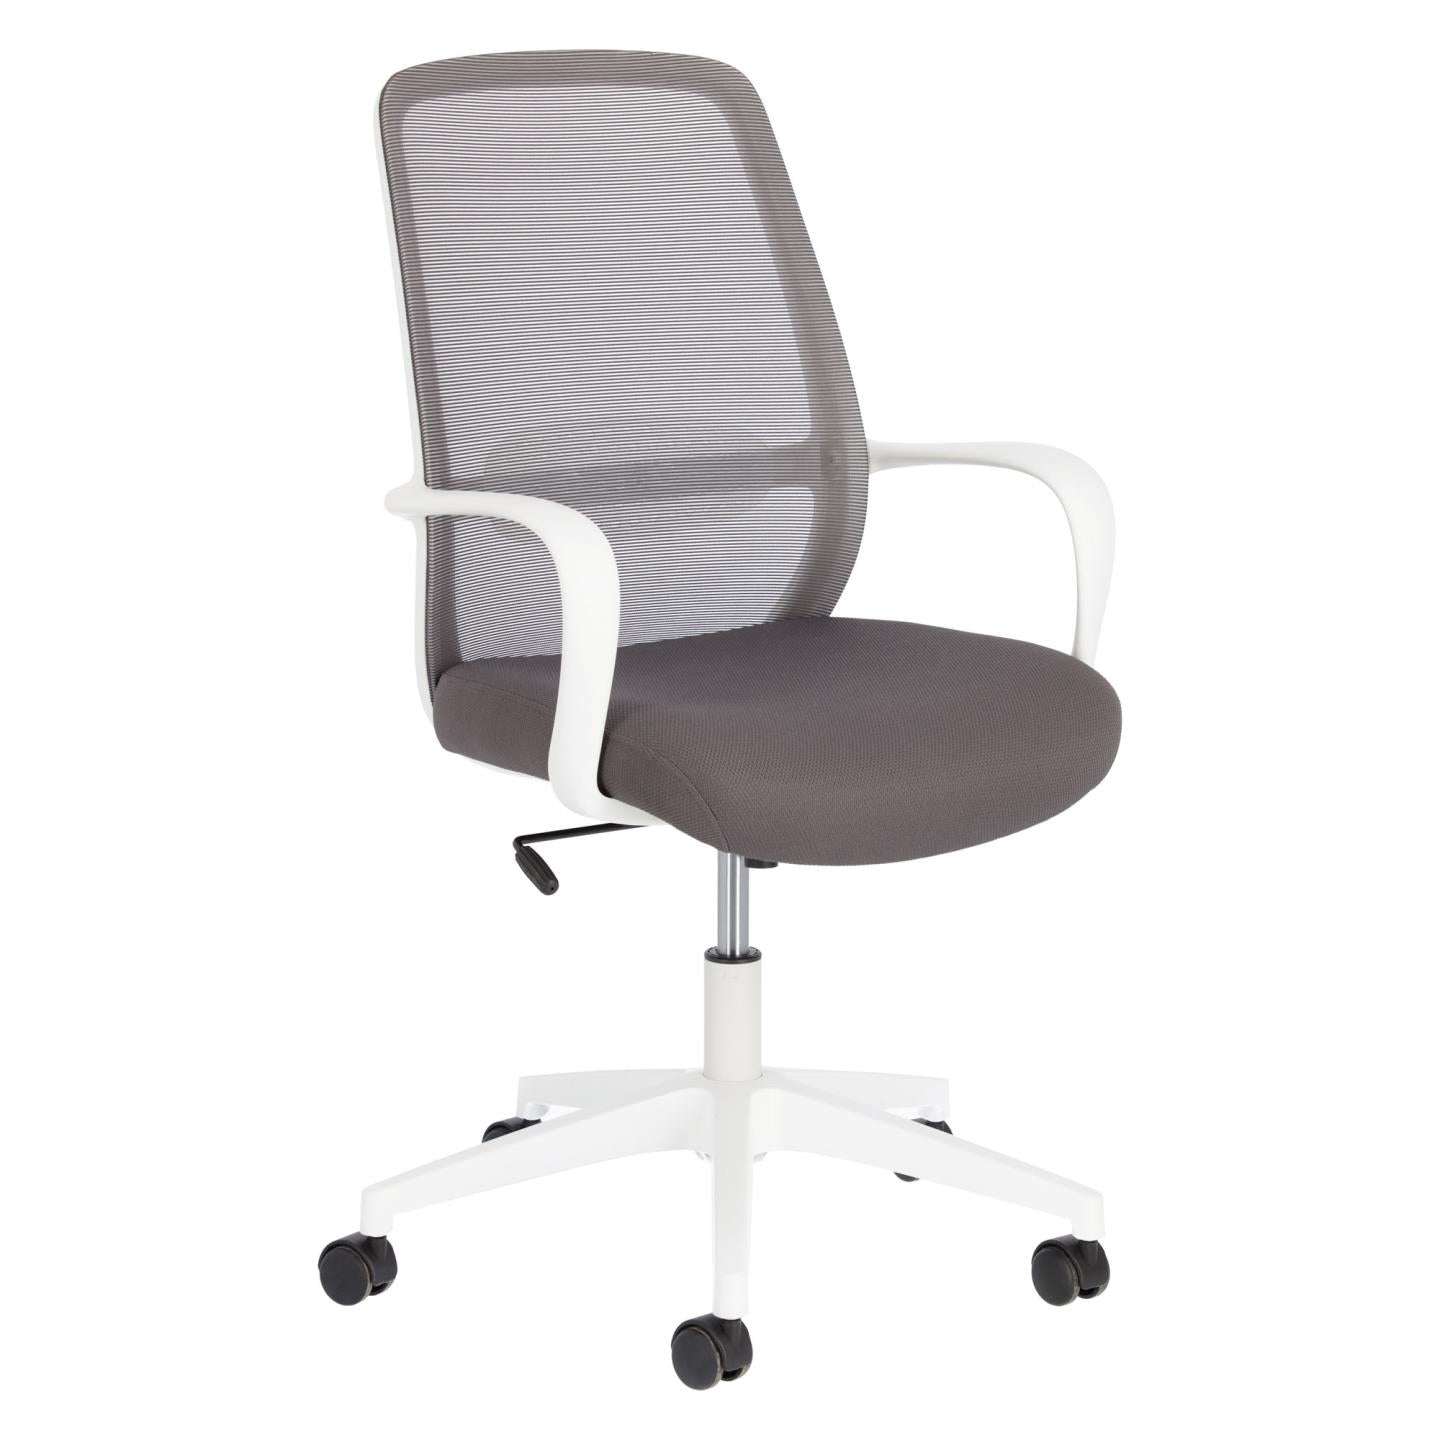 Melva irodai szék szürke színben